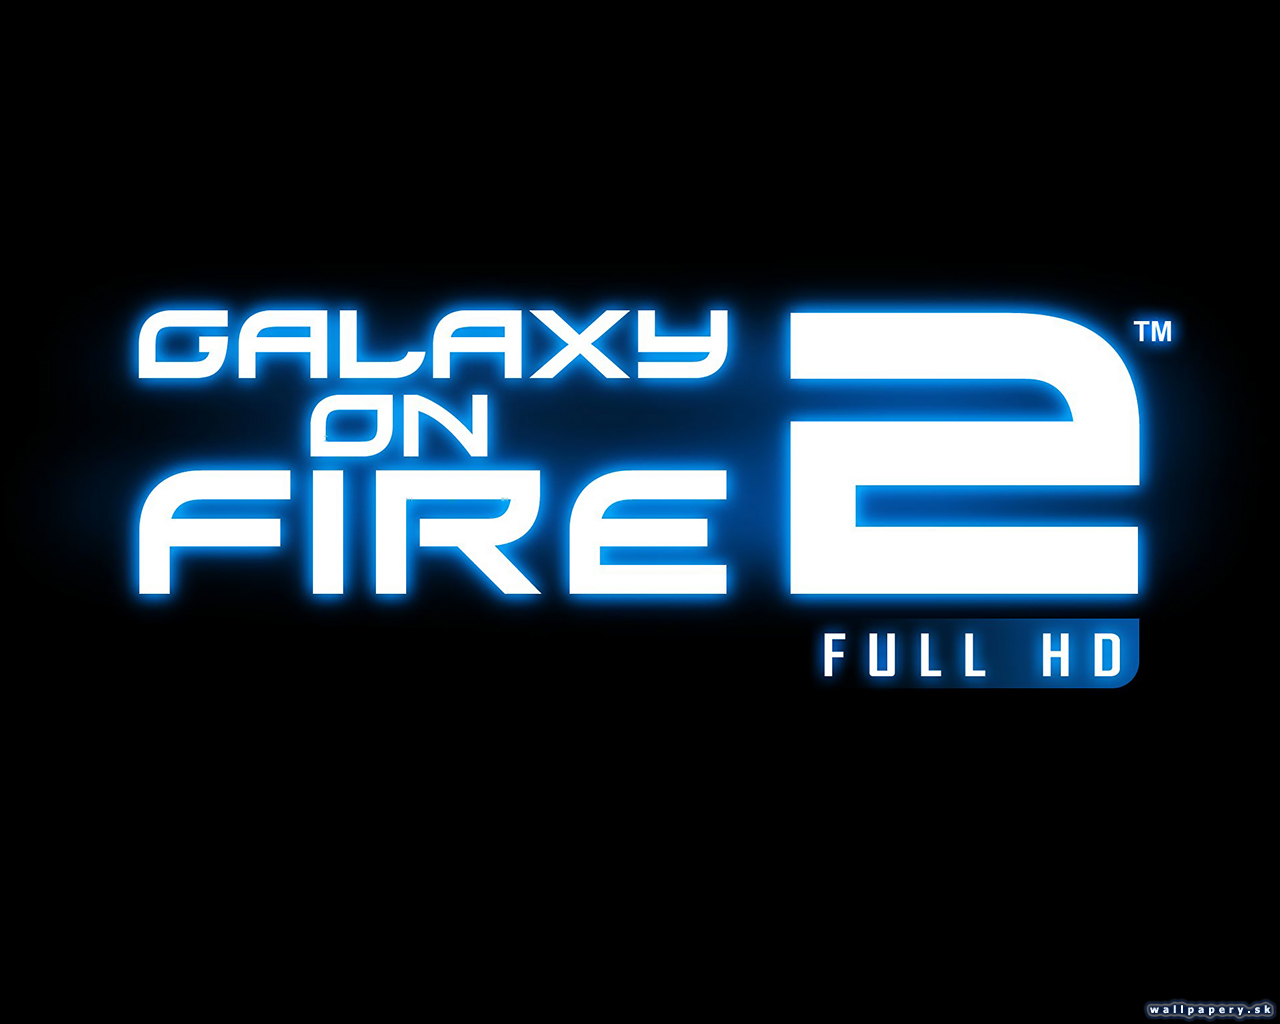 Galaxy on Fire 2 Full HD - wallpaper 3